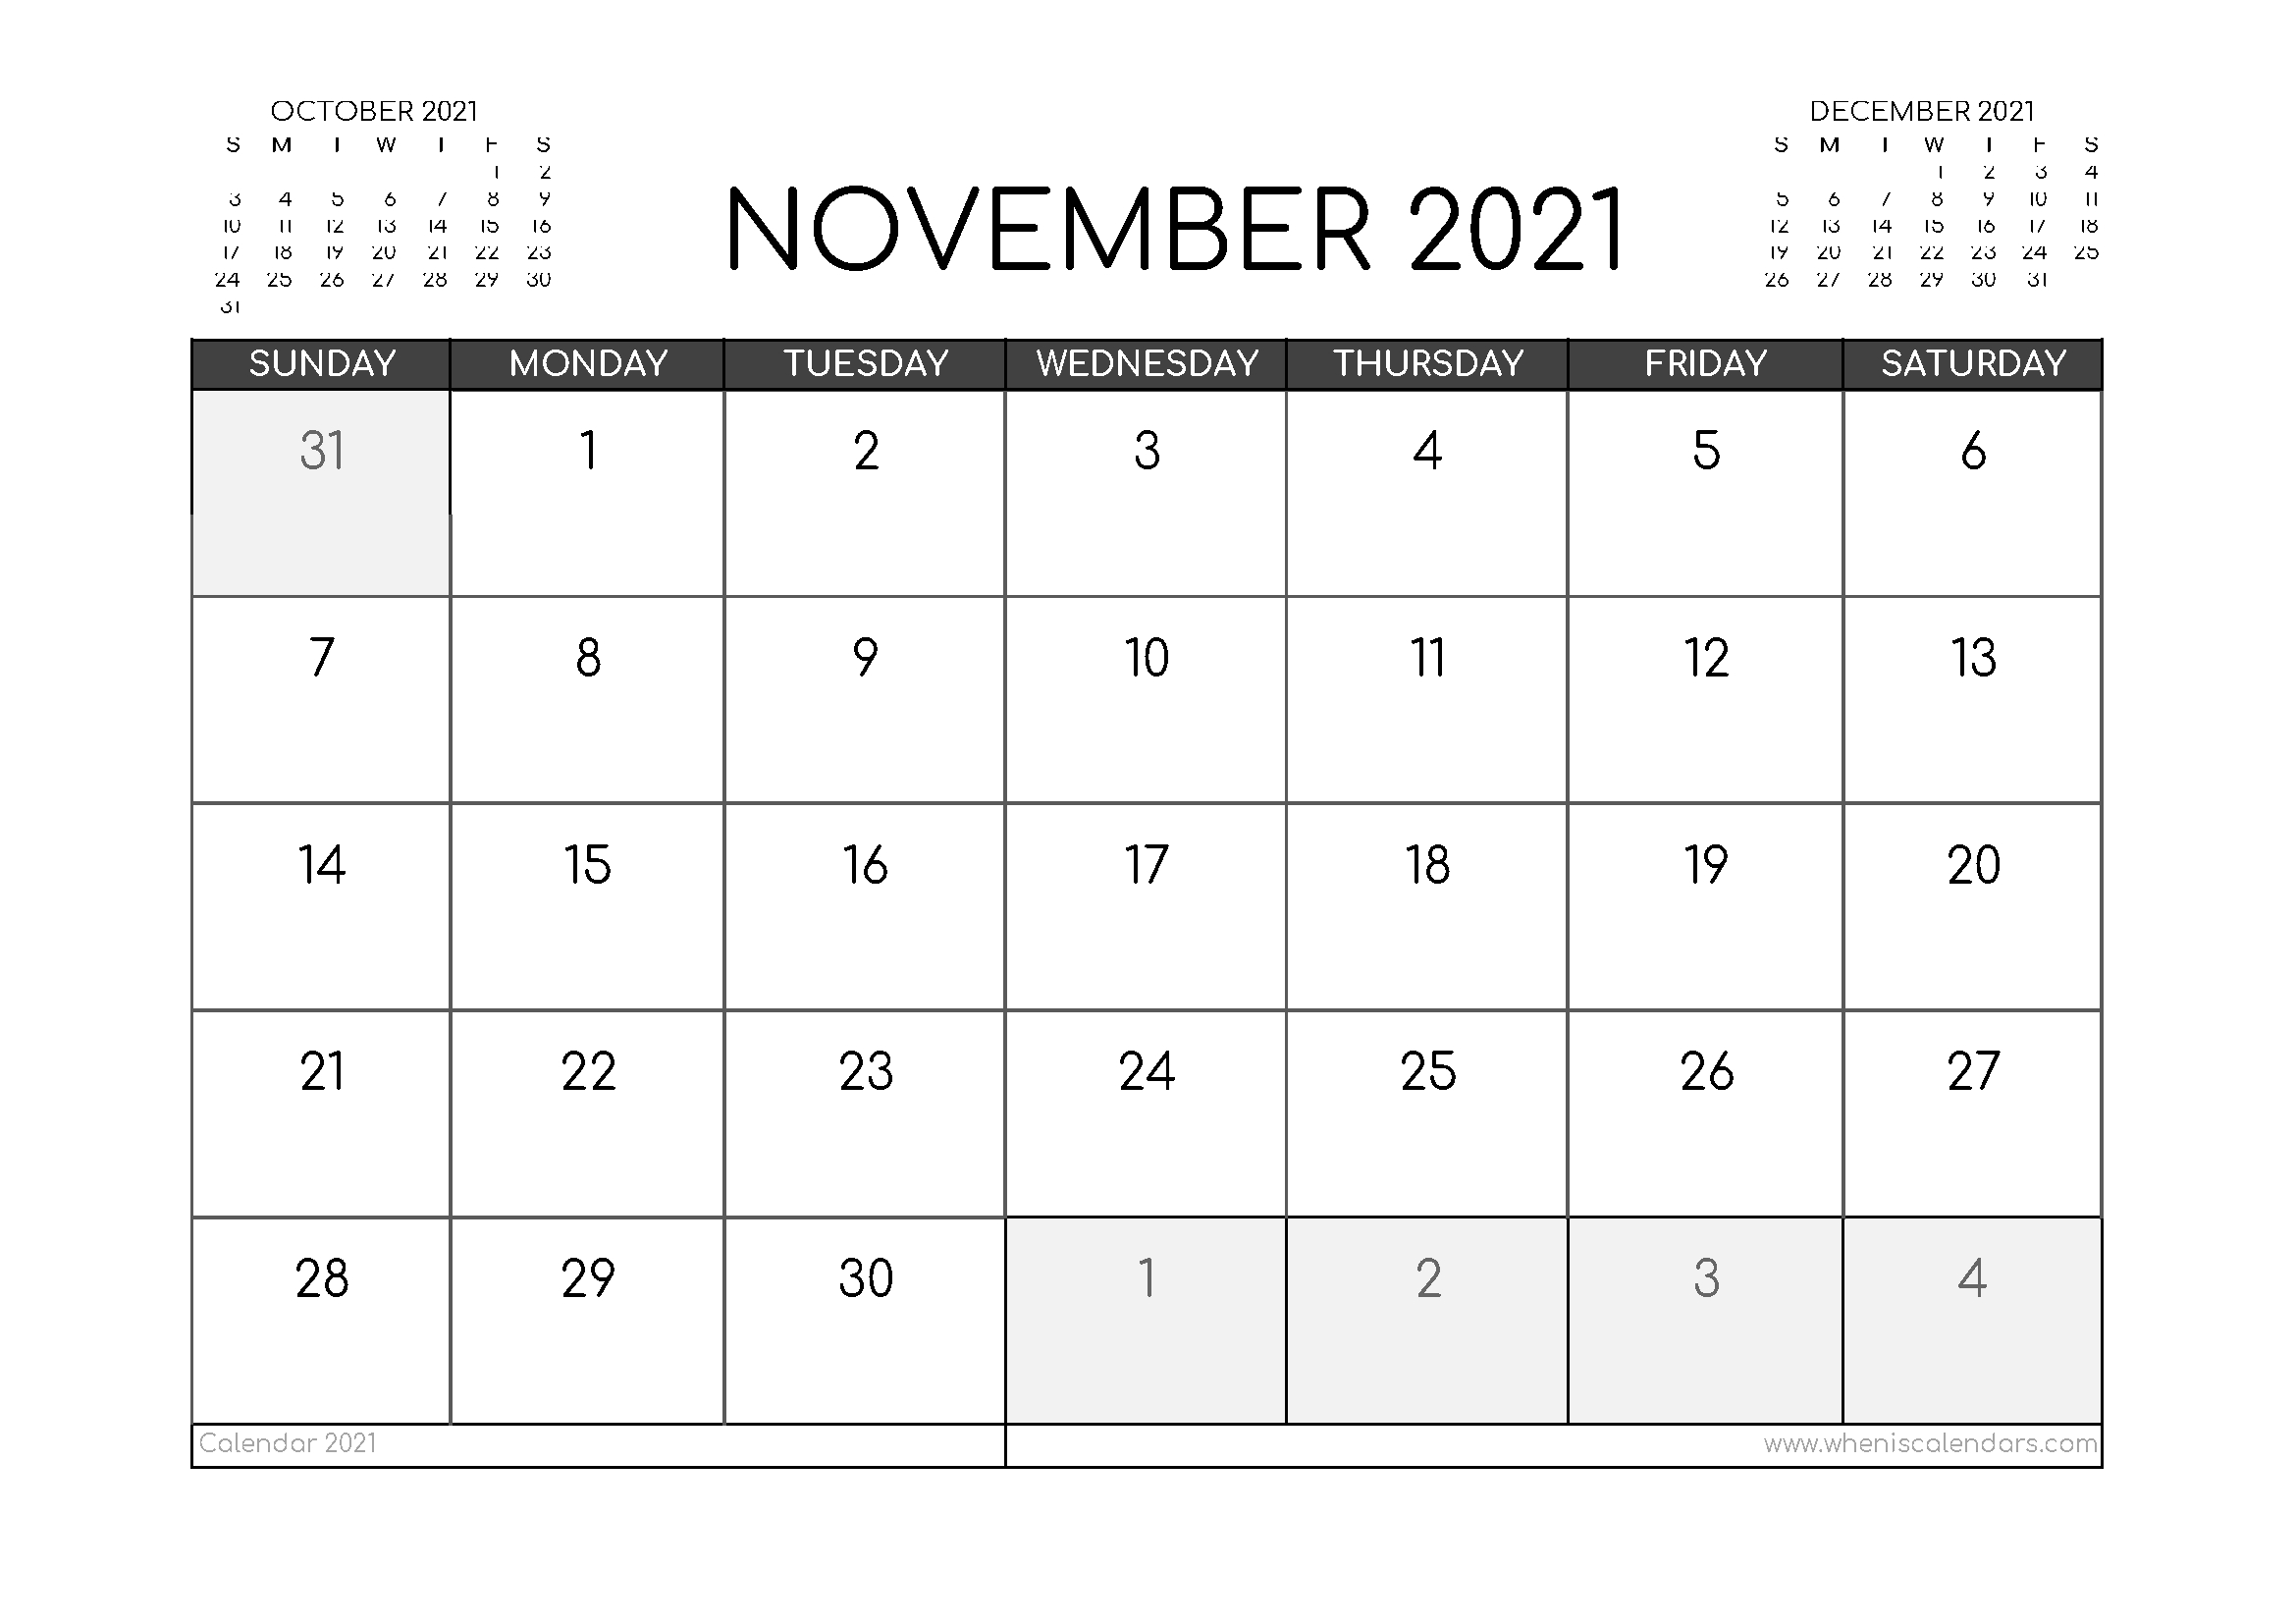 November 2021 Calendar Australia | 2021 Calendar November 2021 Calendar With Holidays Usa